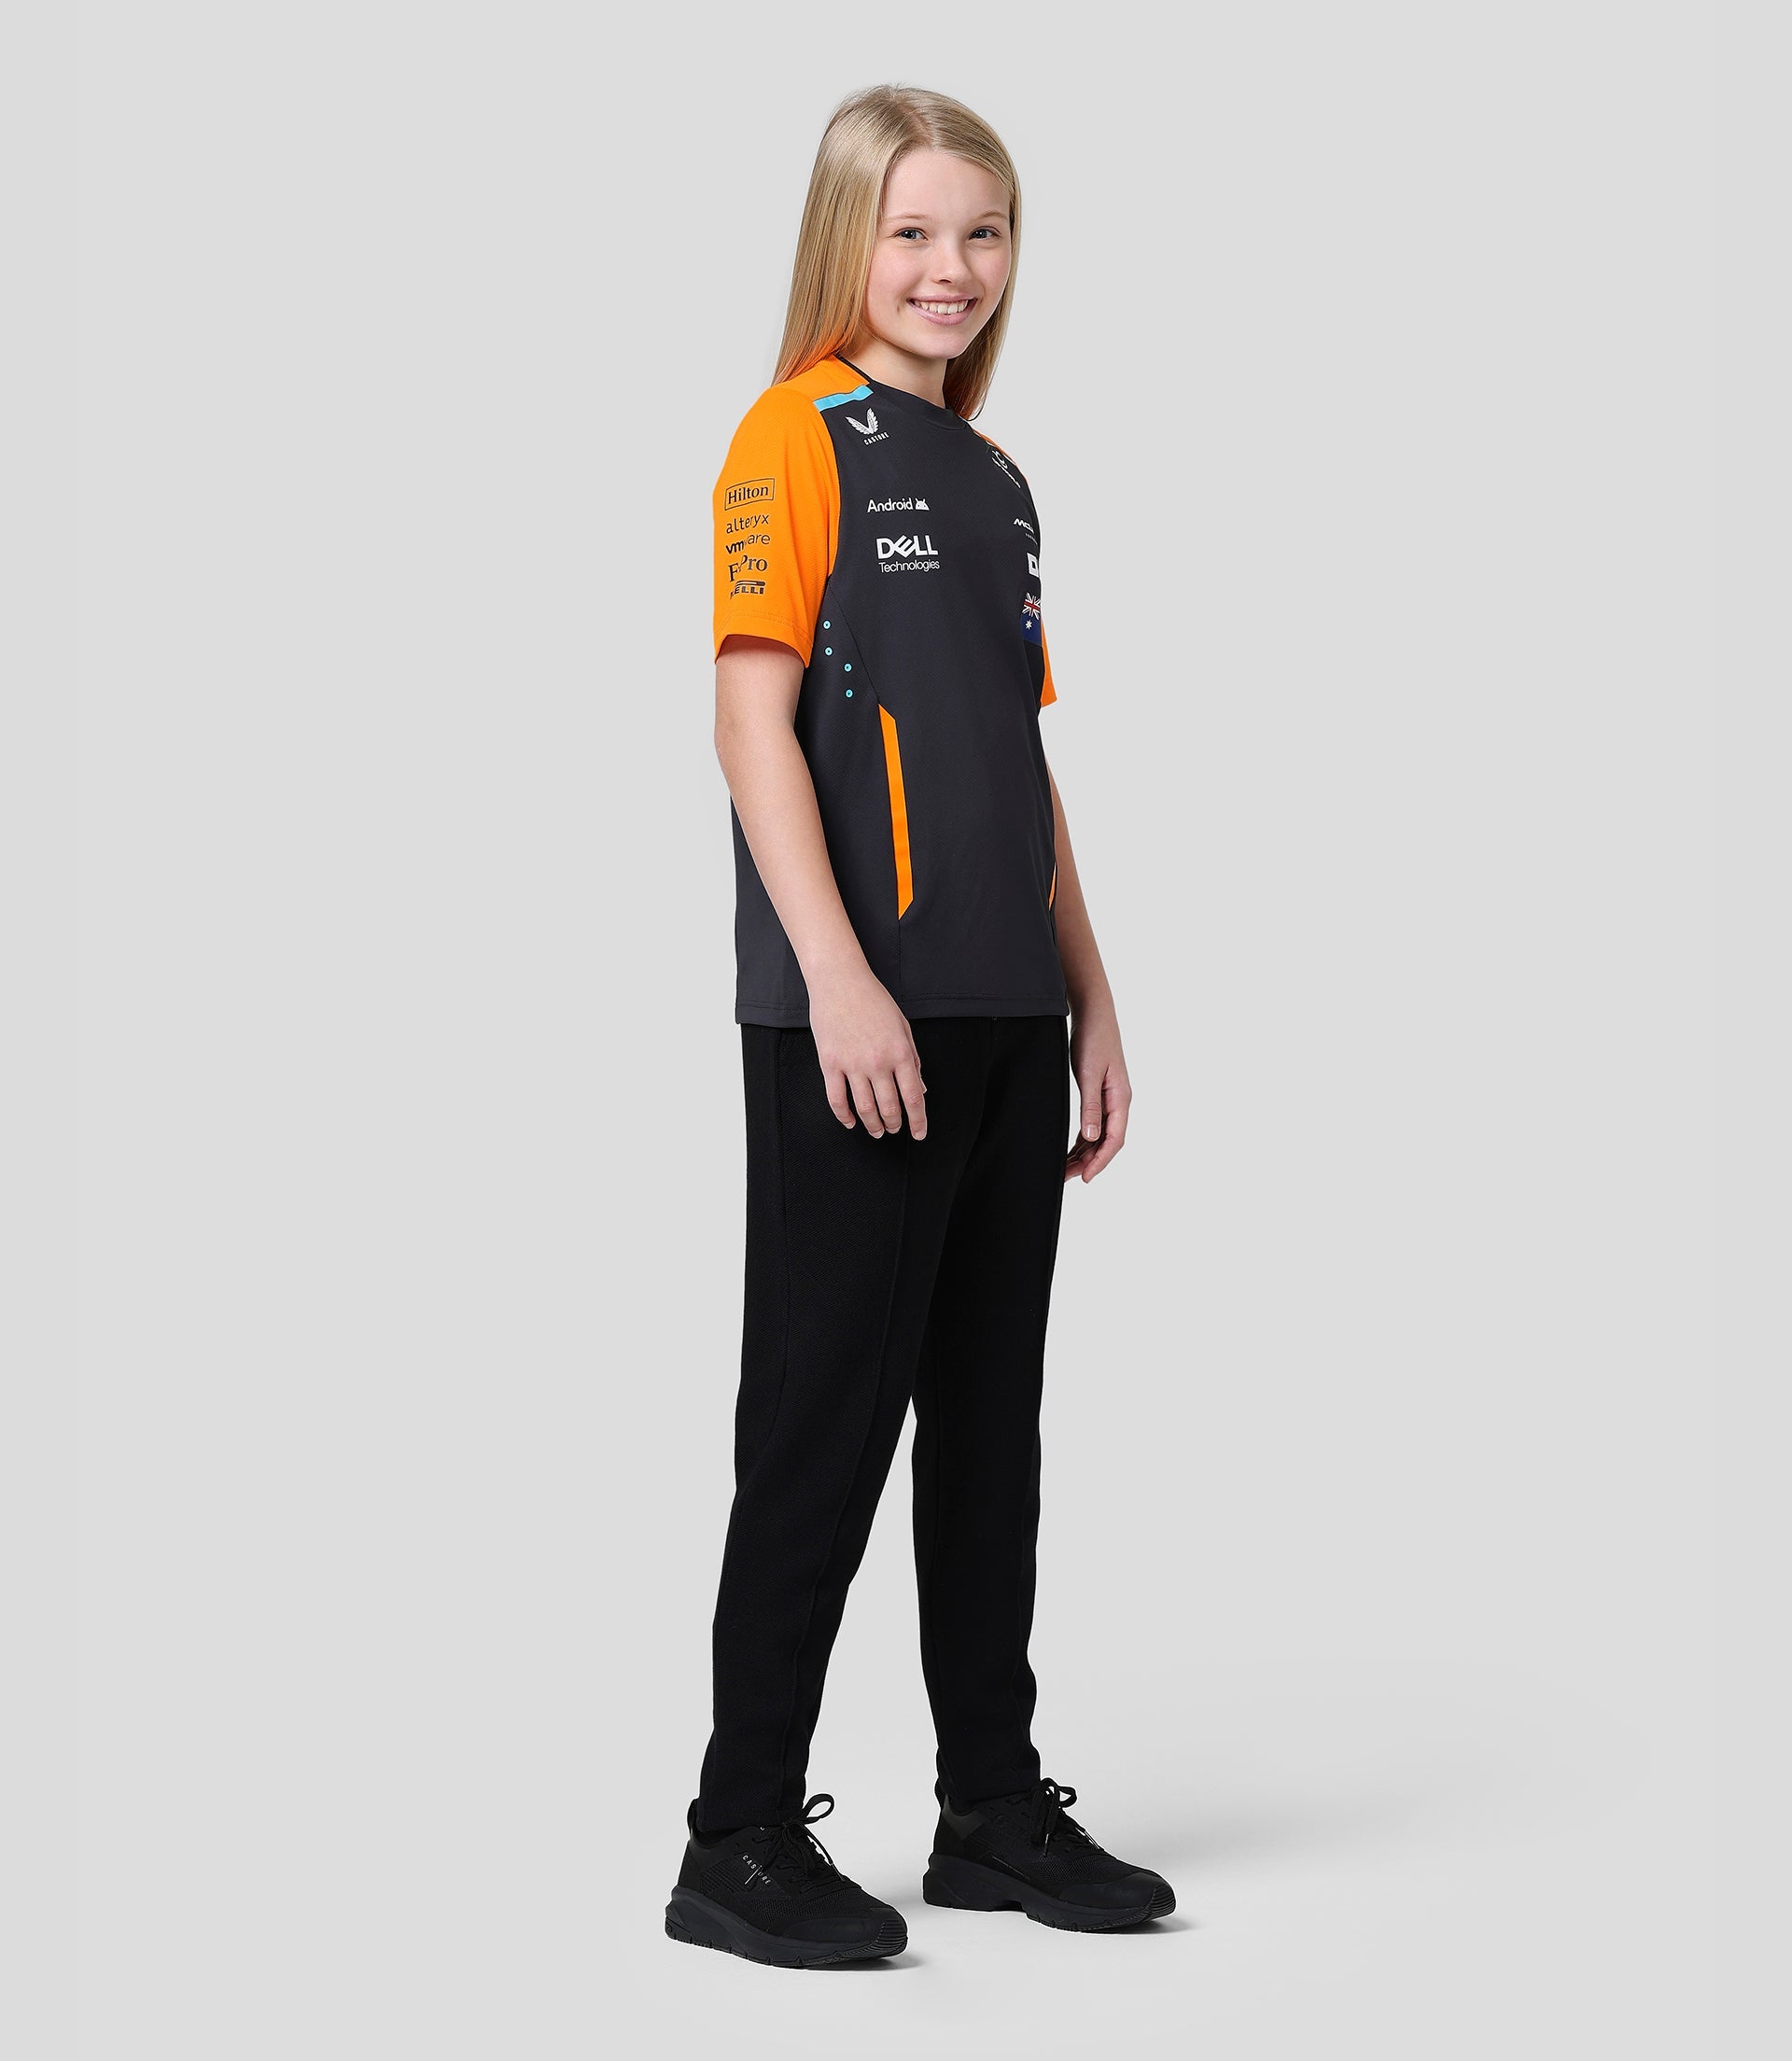 McLaren Junior Official Teamwear Set Up T-Shirt Oscar Piastri Formula 1 - Phantom/Papaya